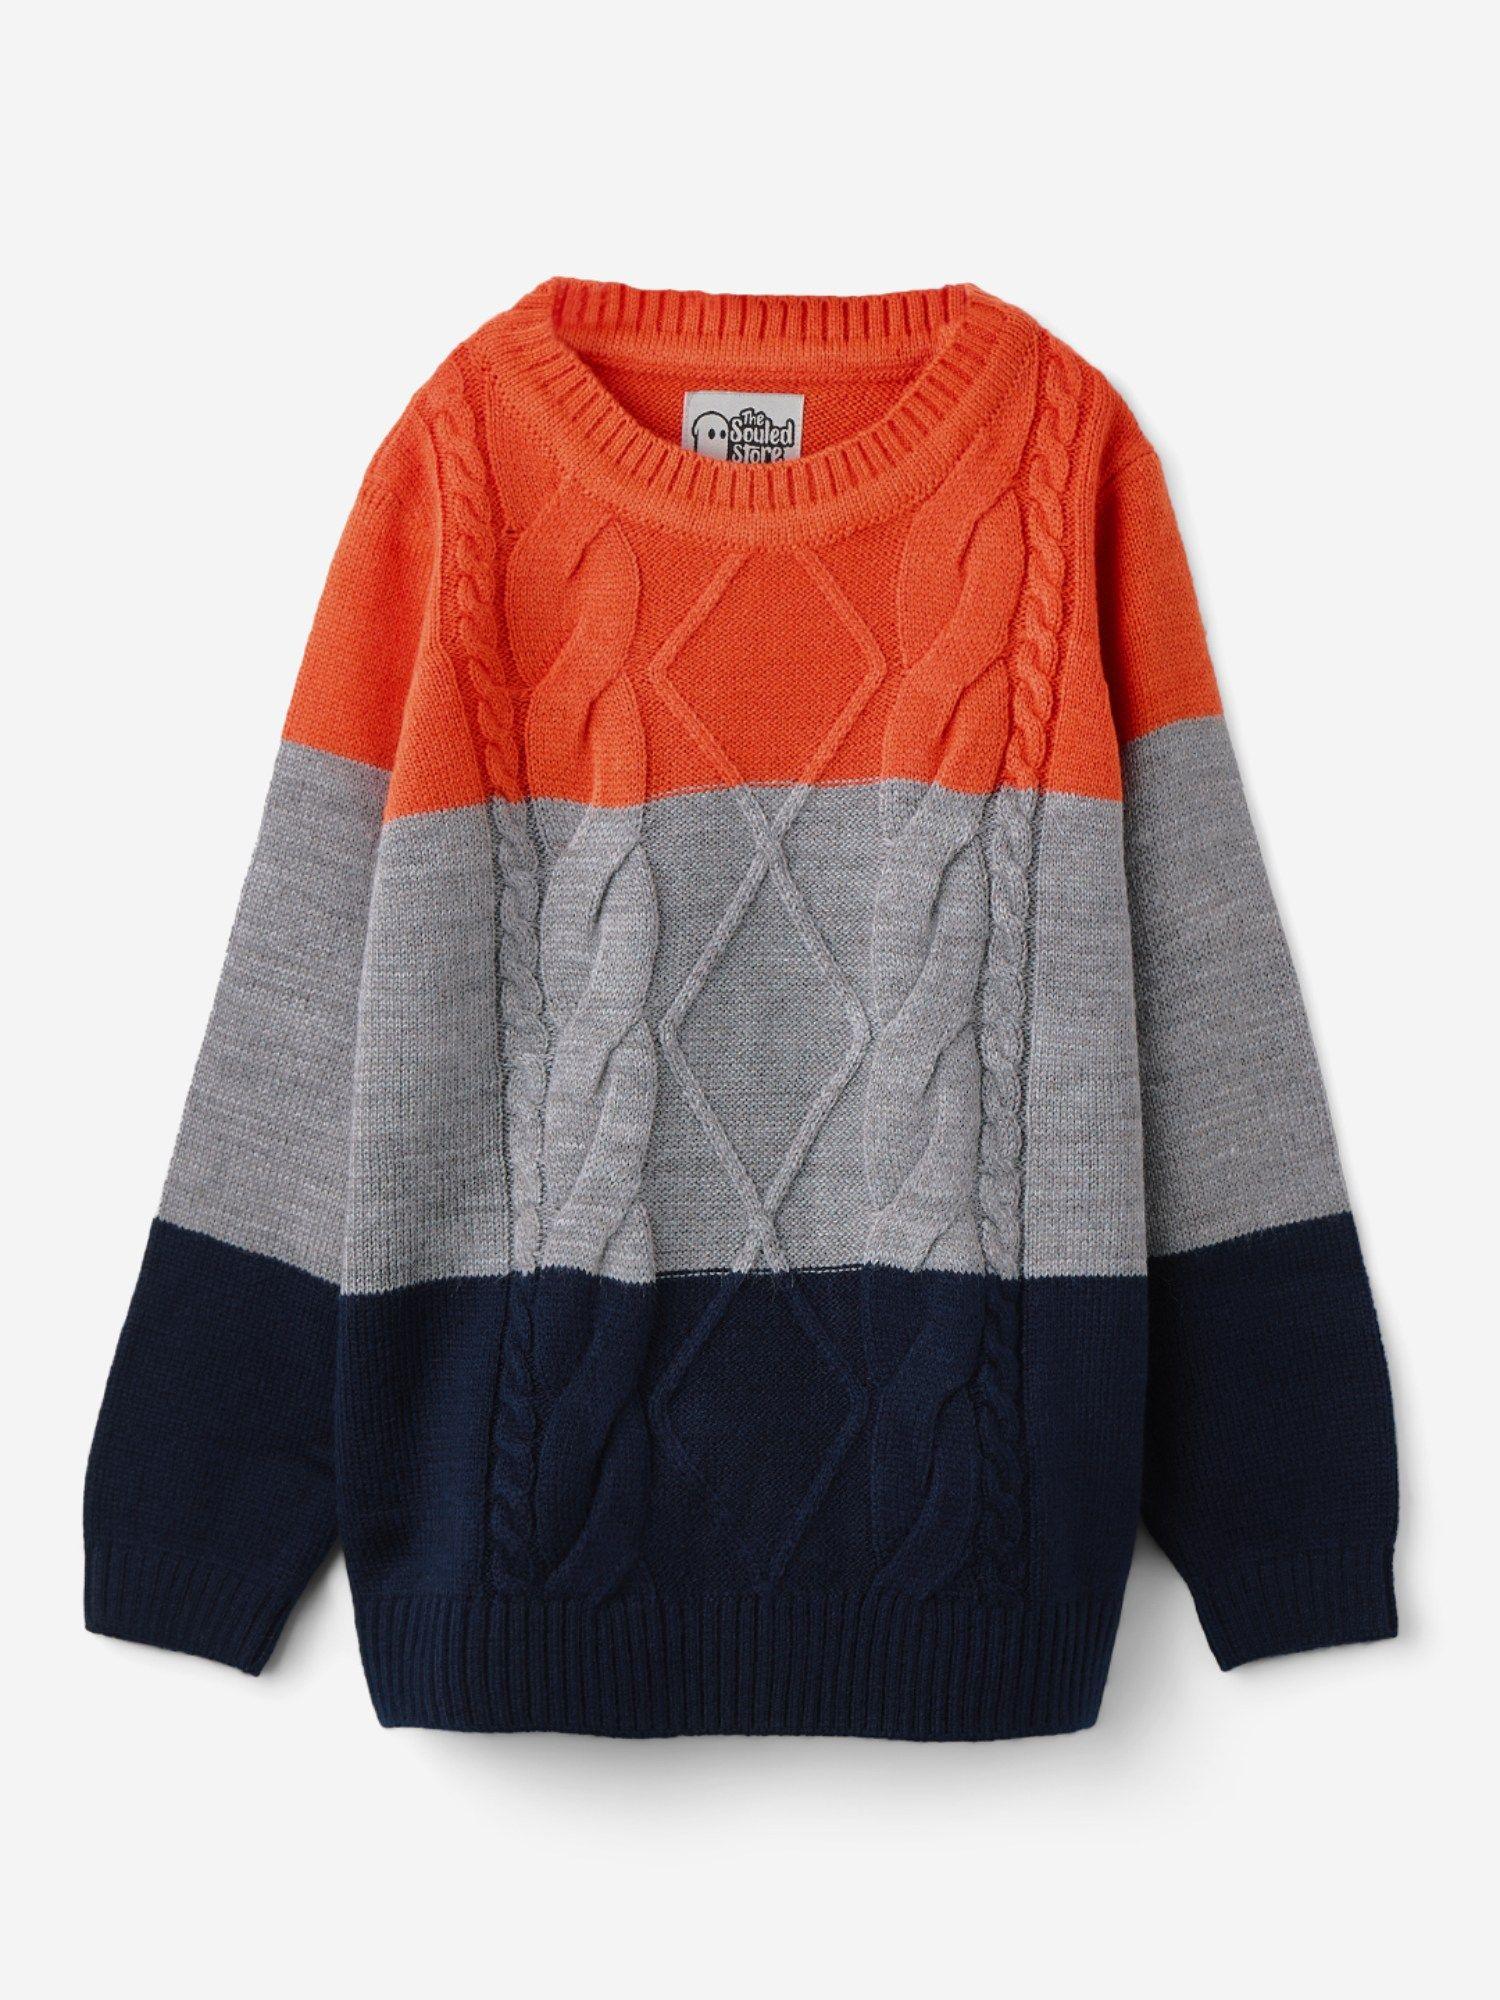 original solids: orange, blue (colourblock) boys sweaters